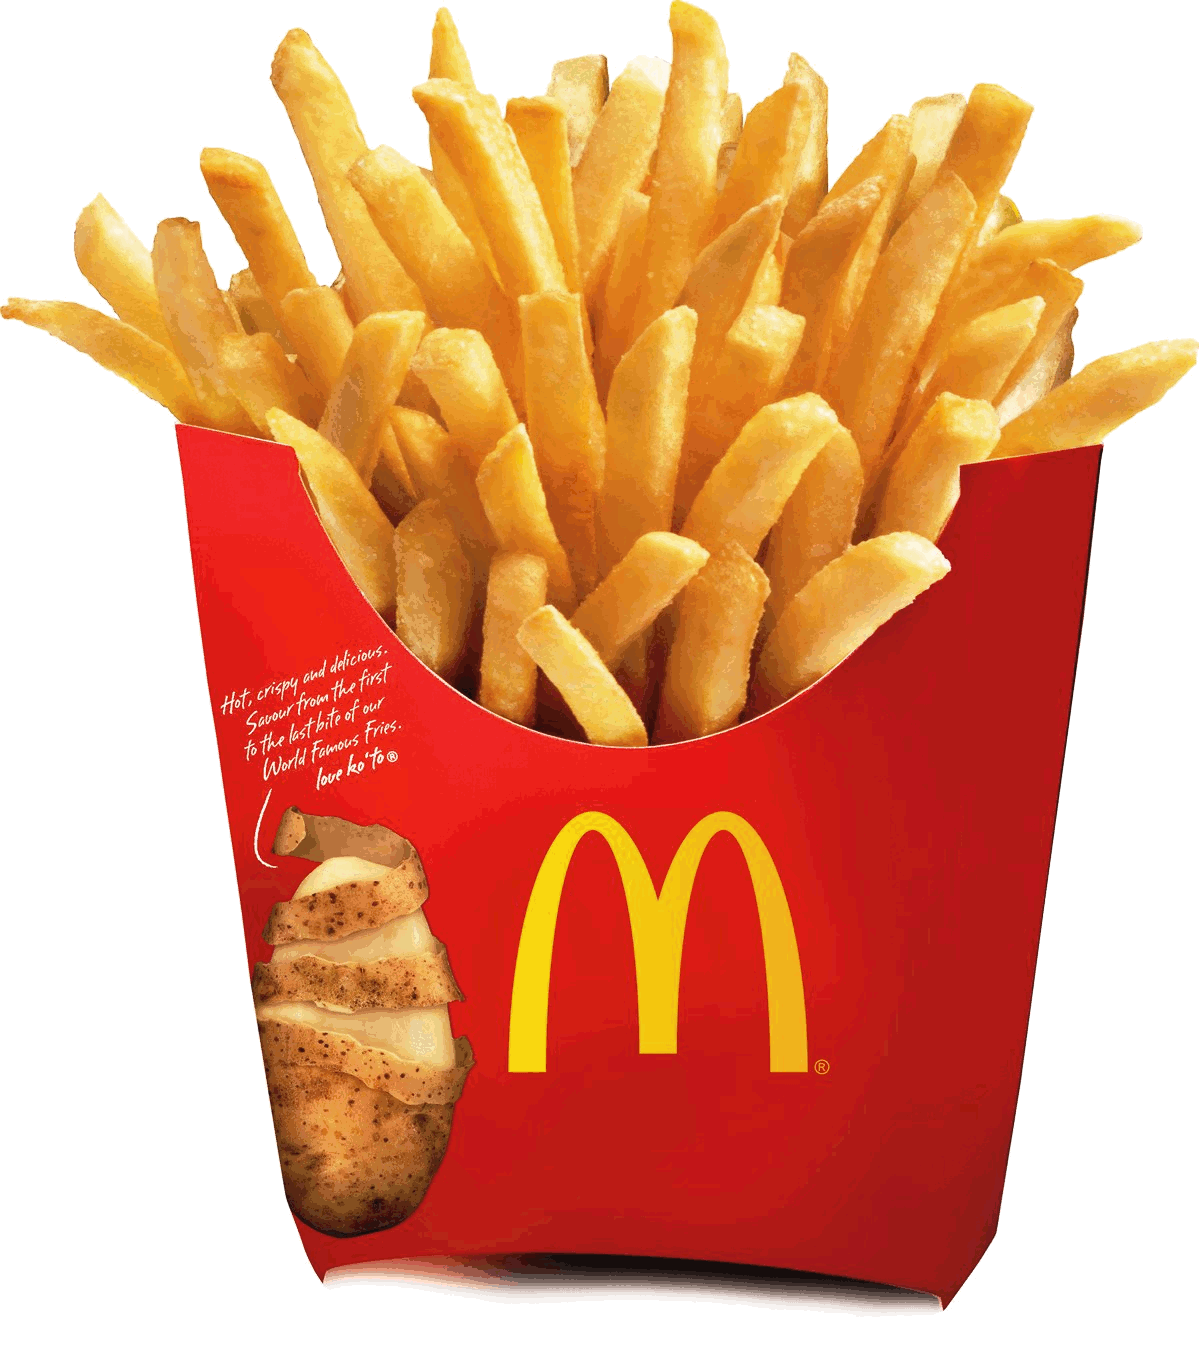 French Fries | McDonald's Wiki | FANDOM powered by Wikia